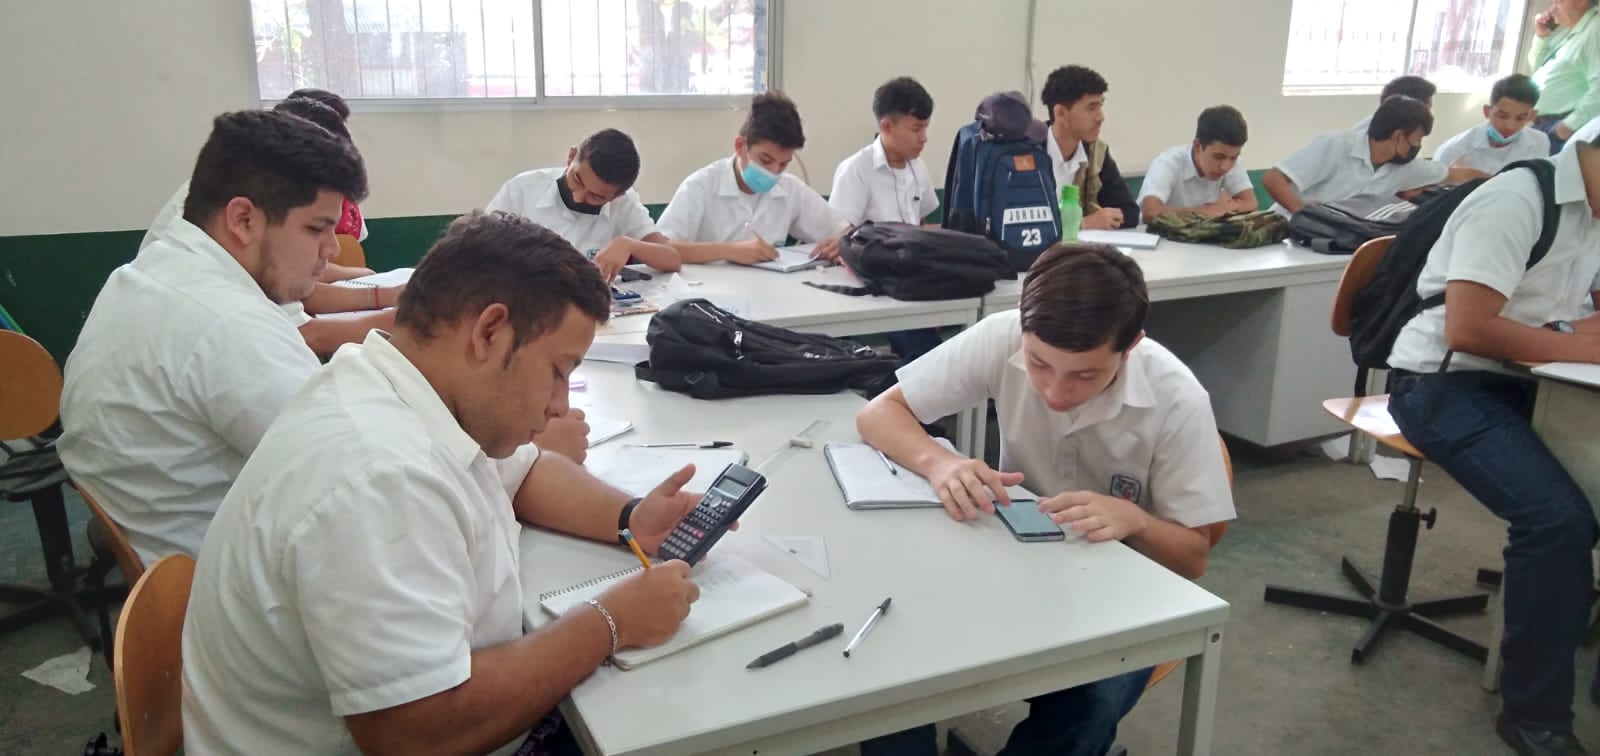 EL INFOP LE APUESTA A LA REFUNDACIÓN DE LA EDUCACIÓN EN HONDURAS - Diario  En Alta Voz – noticias de Honduras, últimas noticias de Honduras